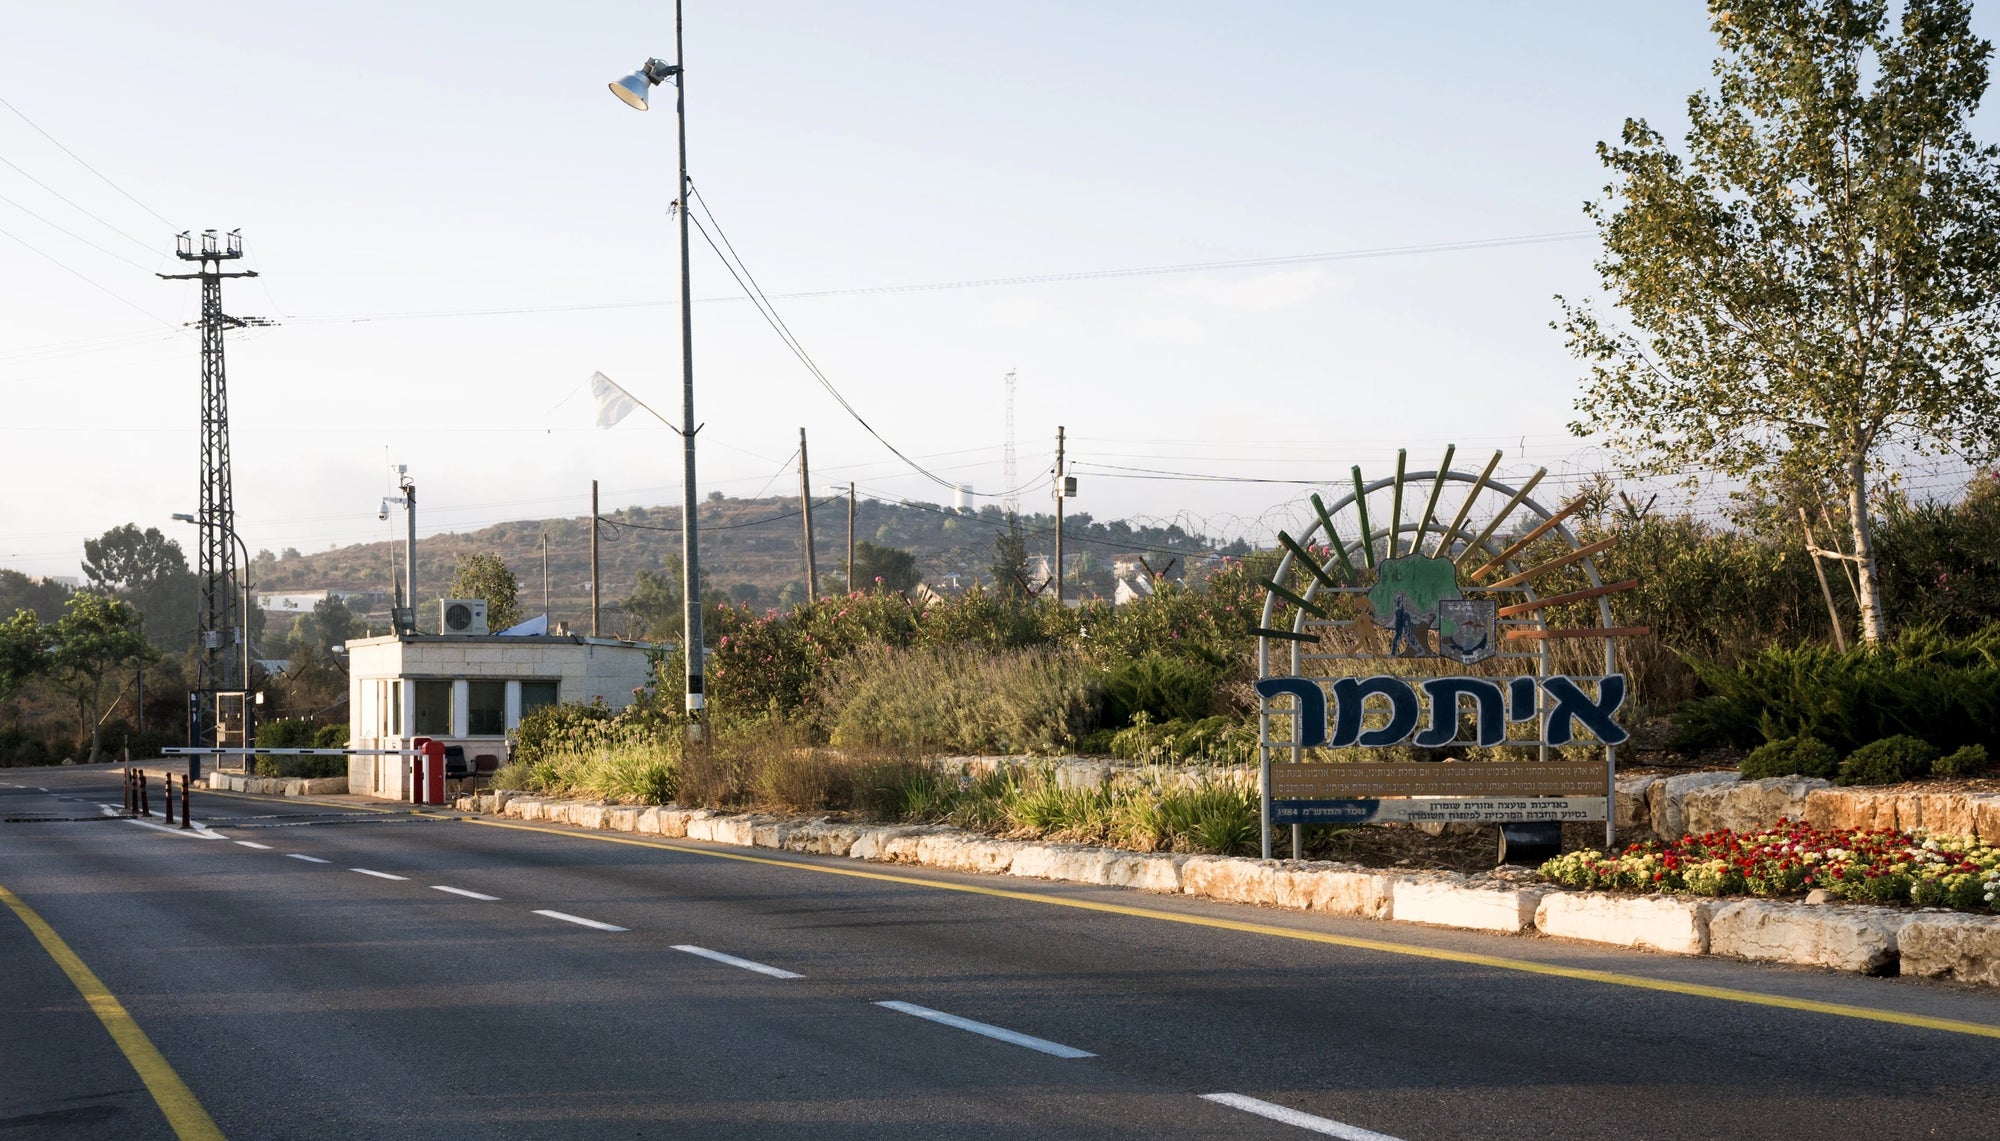 Community of Itamar in Judea and Samaria